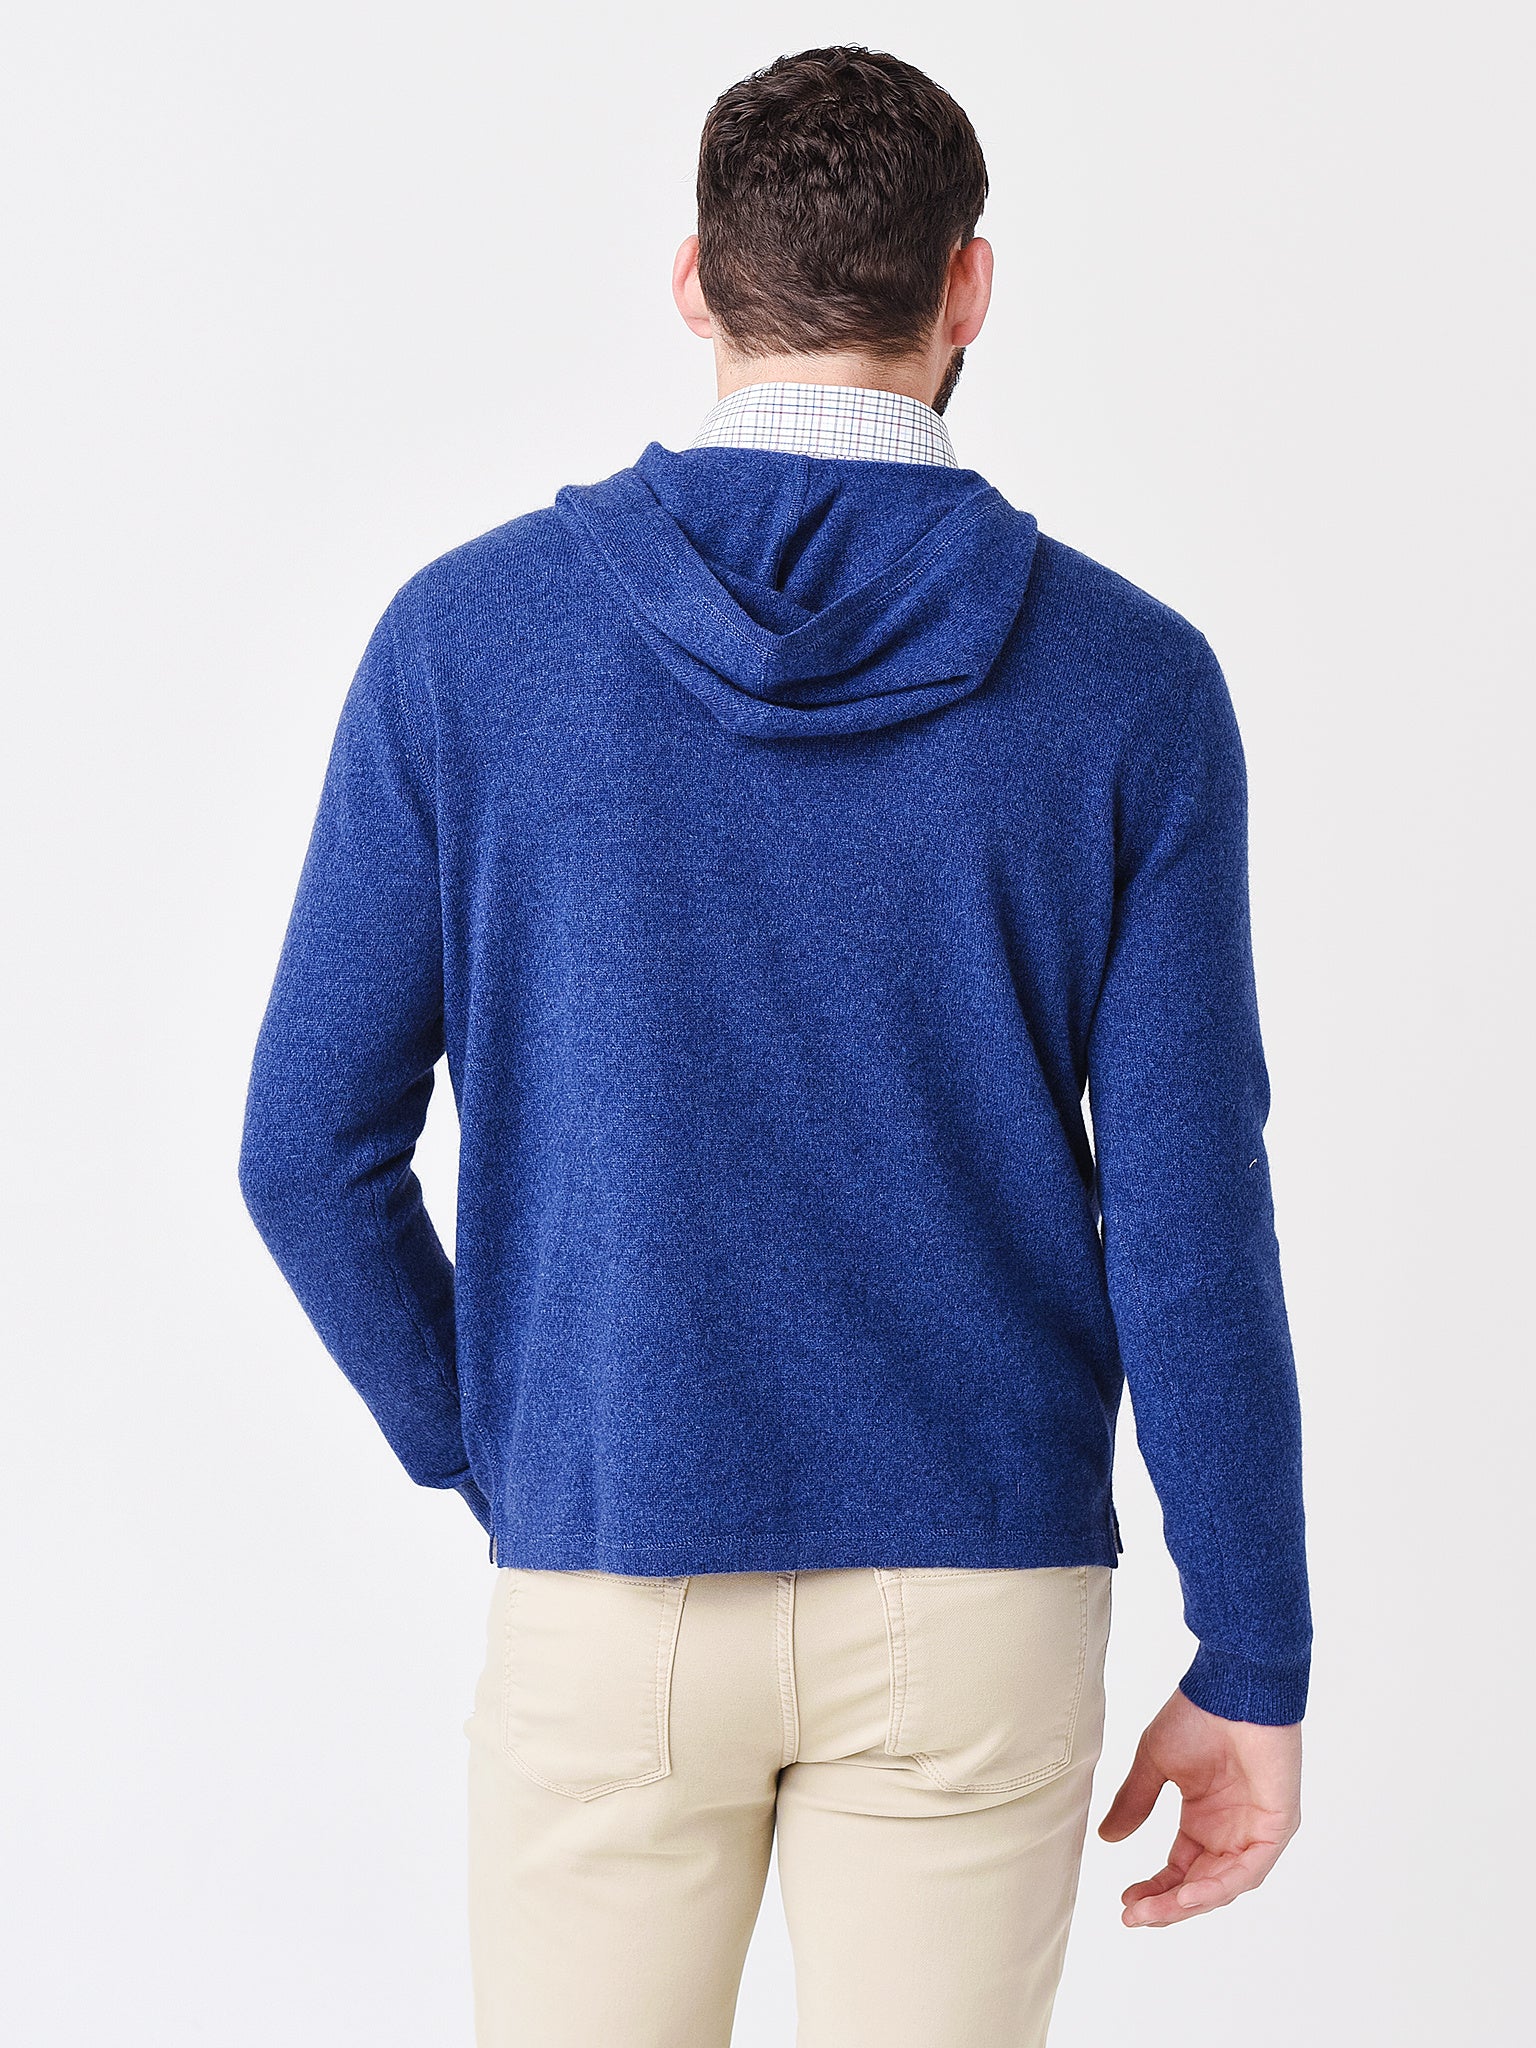 Johnnie-O Men's Dearborn Sweater - Saint Bernard